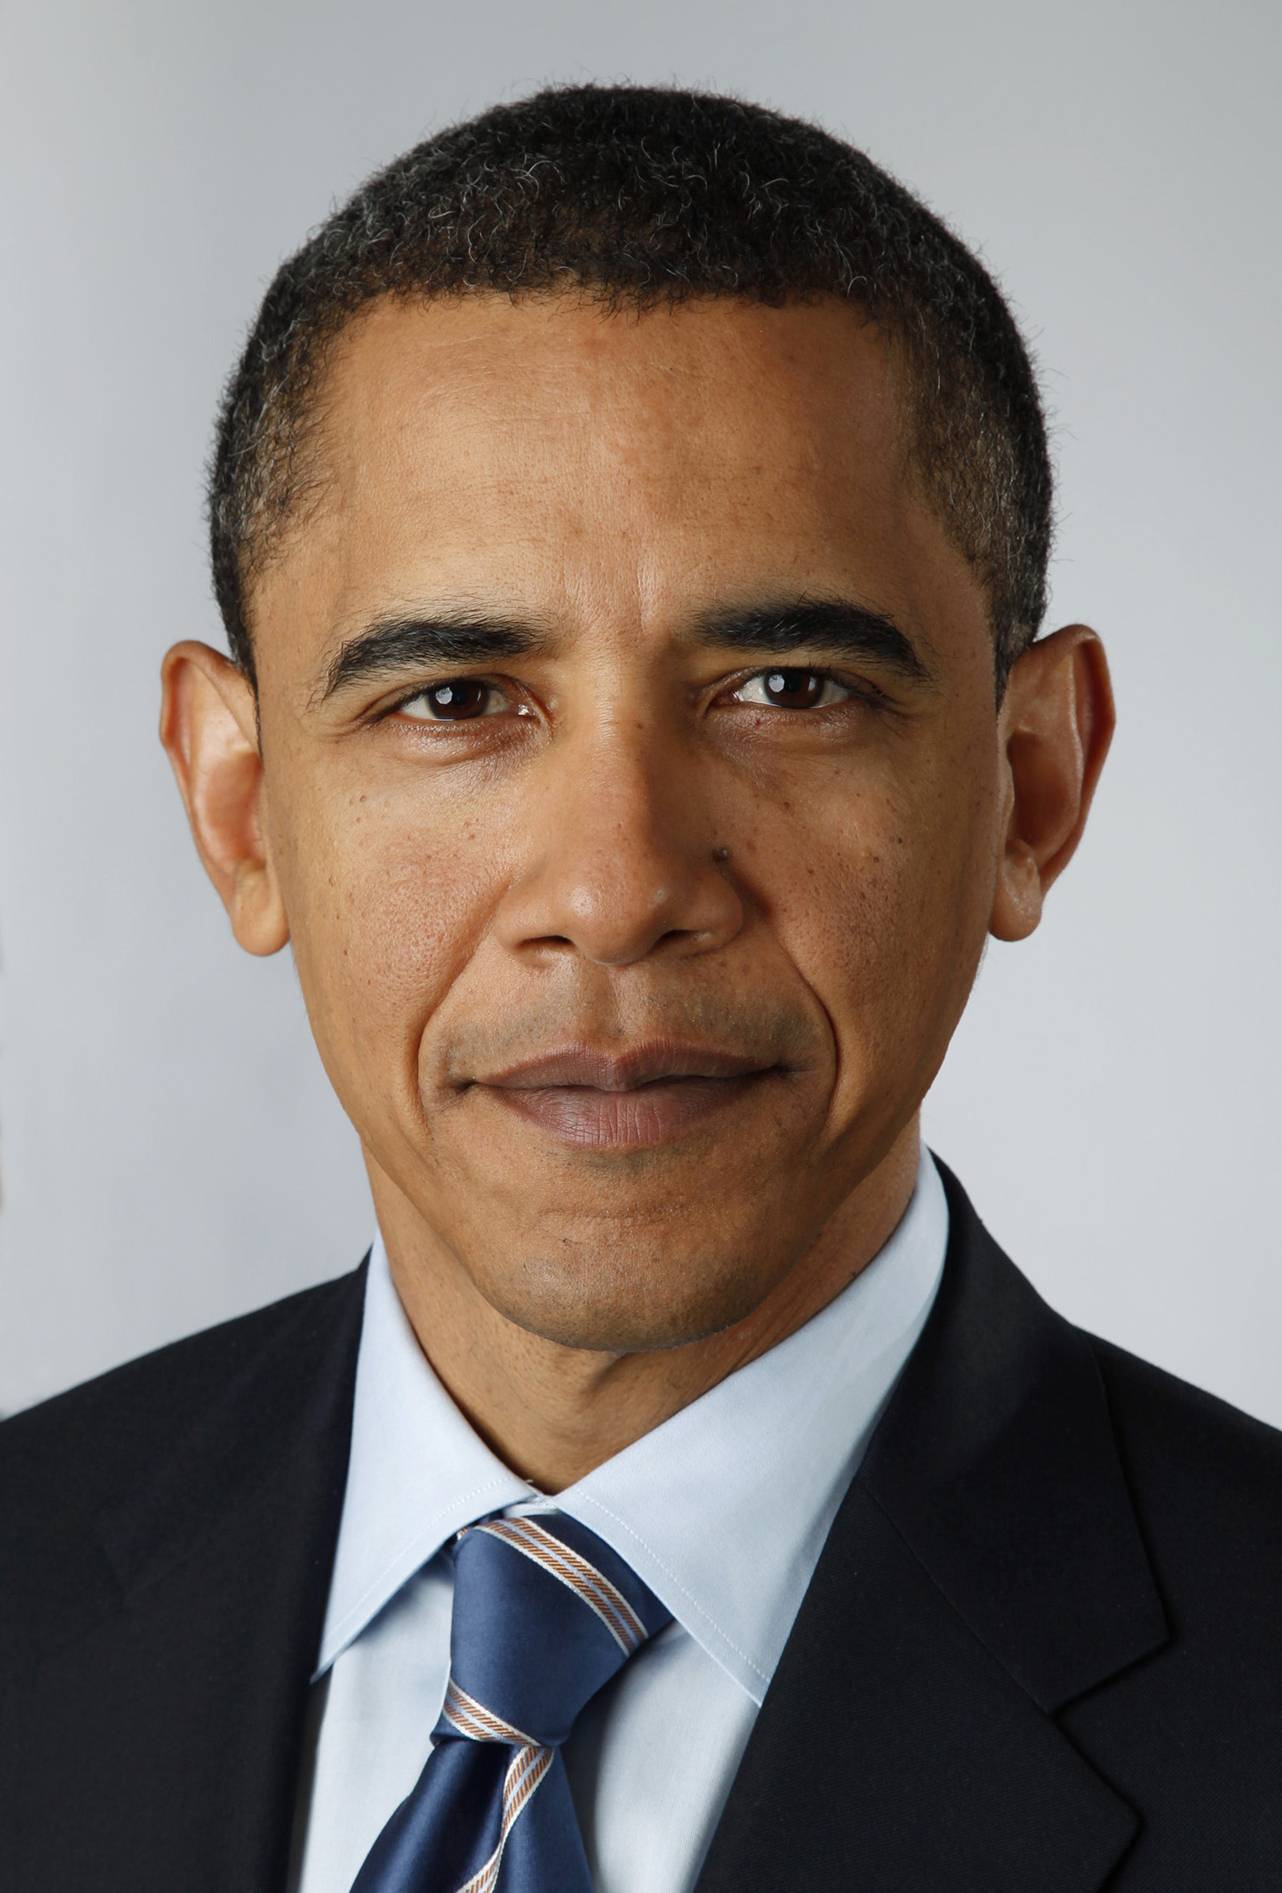 Official_portrait_of_Barack_Obama-2.jpg